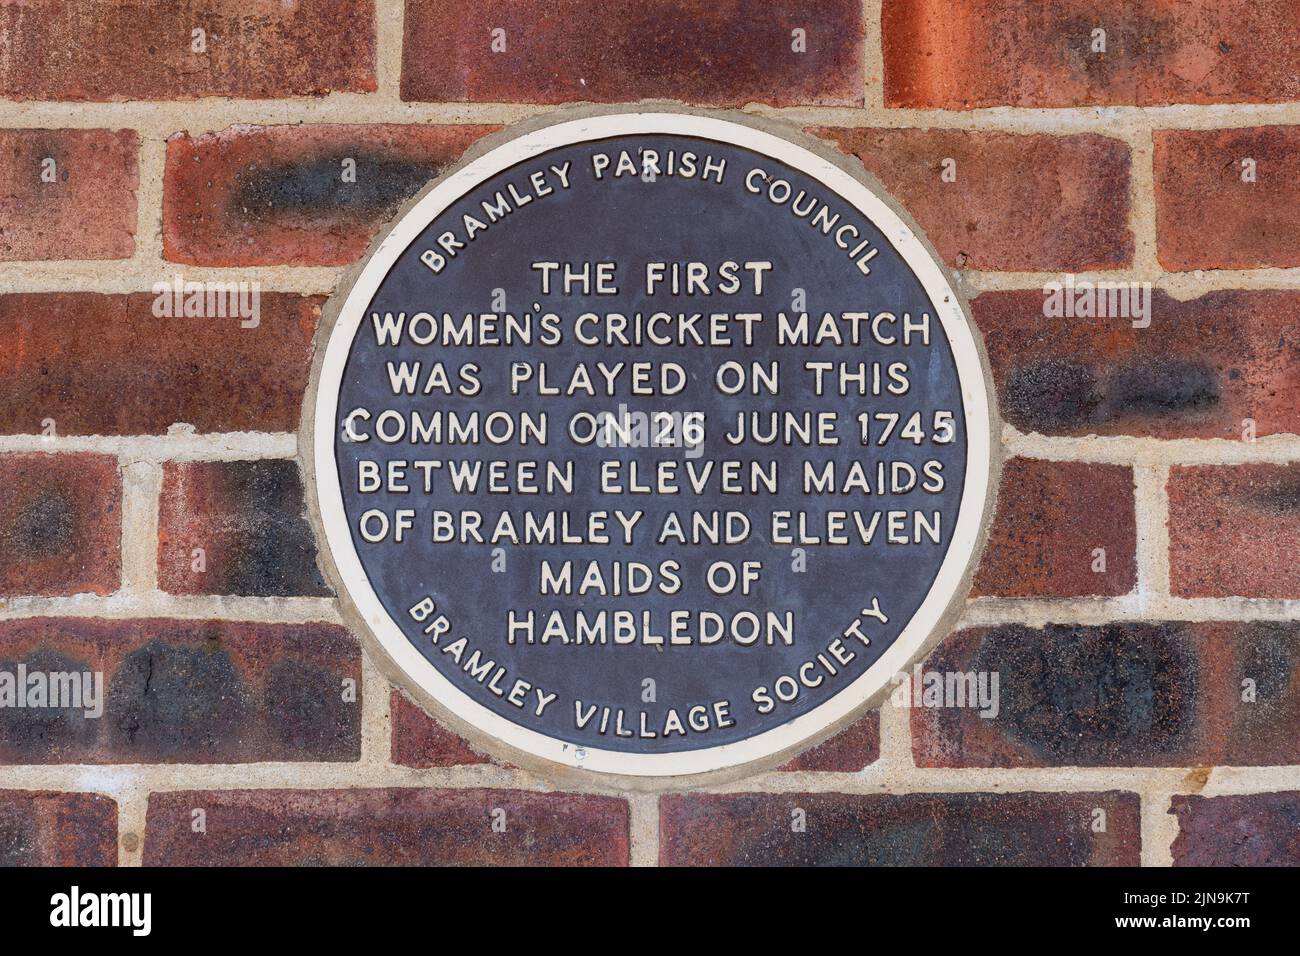 Placa conmemorativa del primer partido de críquet femenino en 1745 en el edificio del club de críquet Bramley Village, Gosden Common, Surrey, Inglaterra, Reino Unido Foto de stock